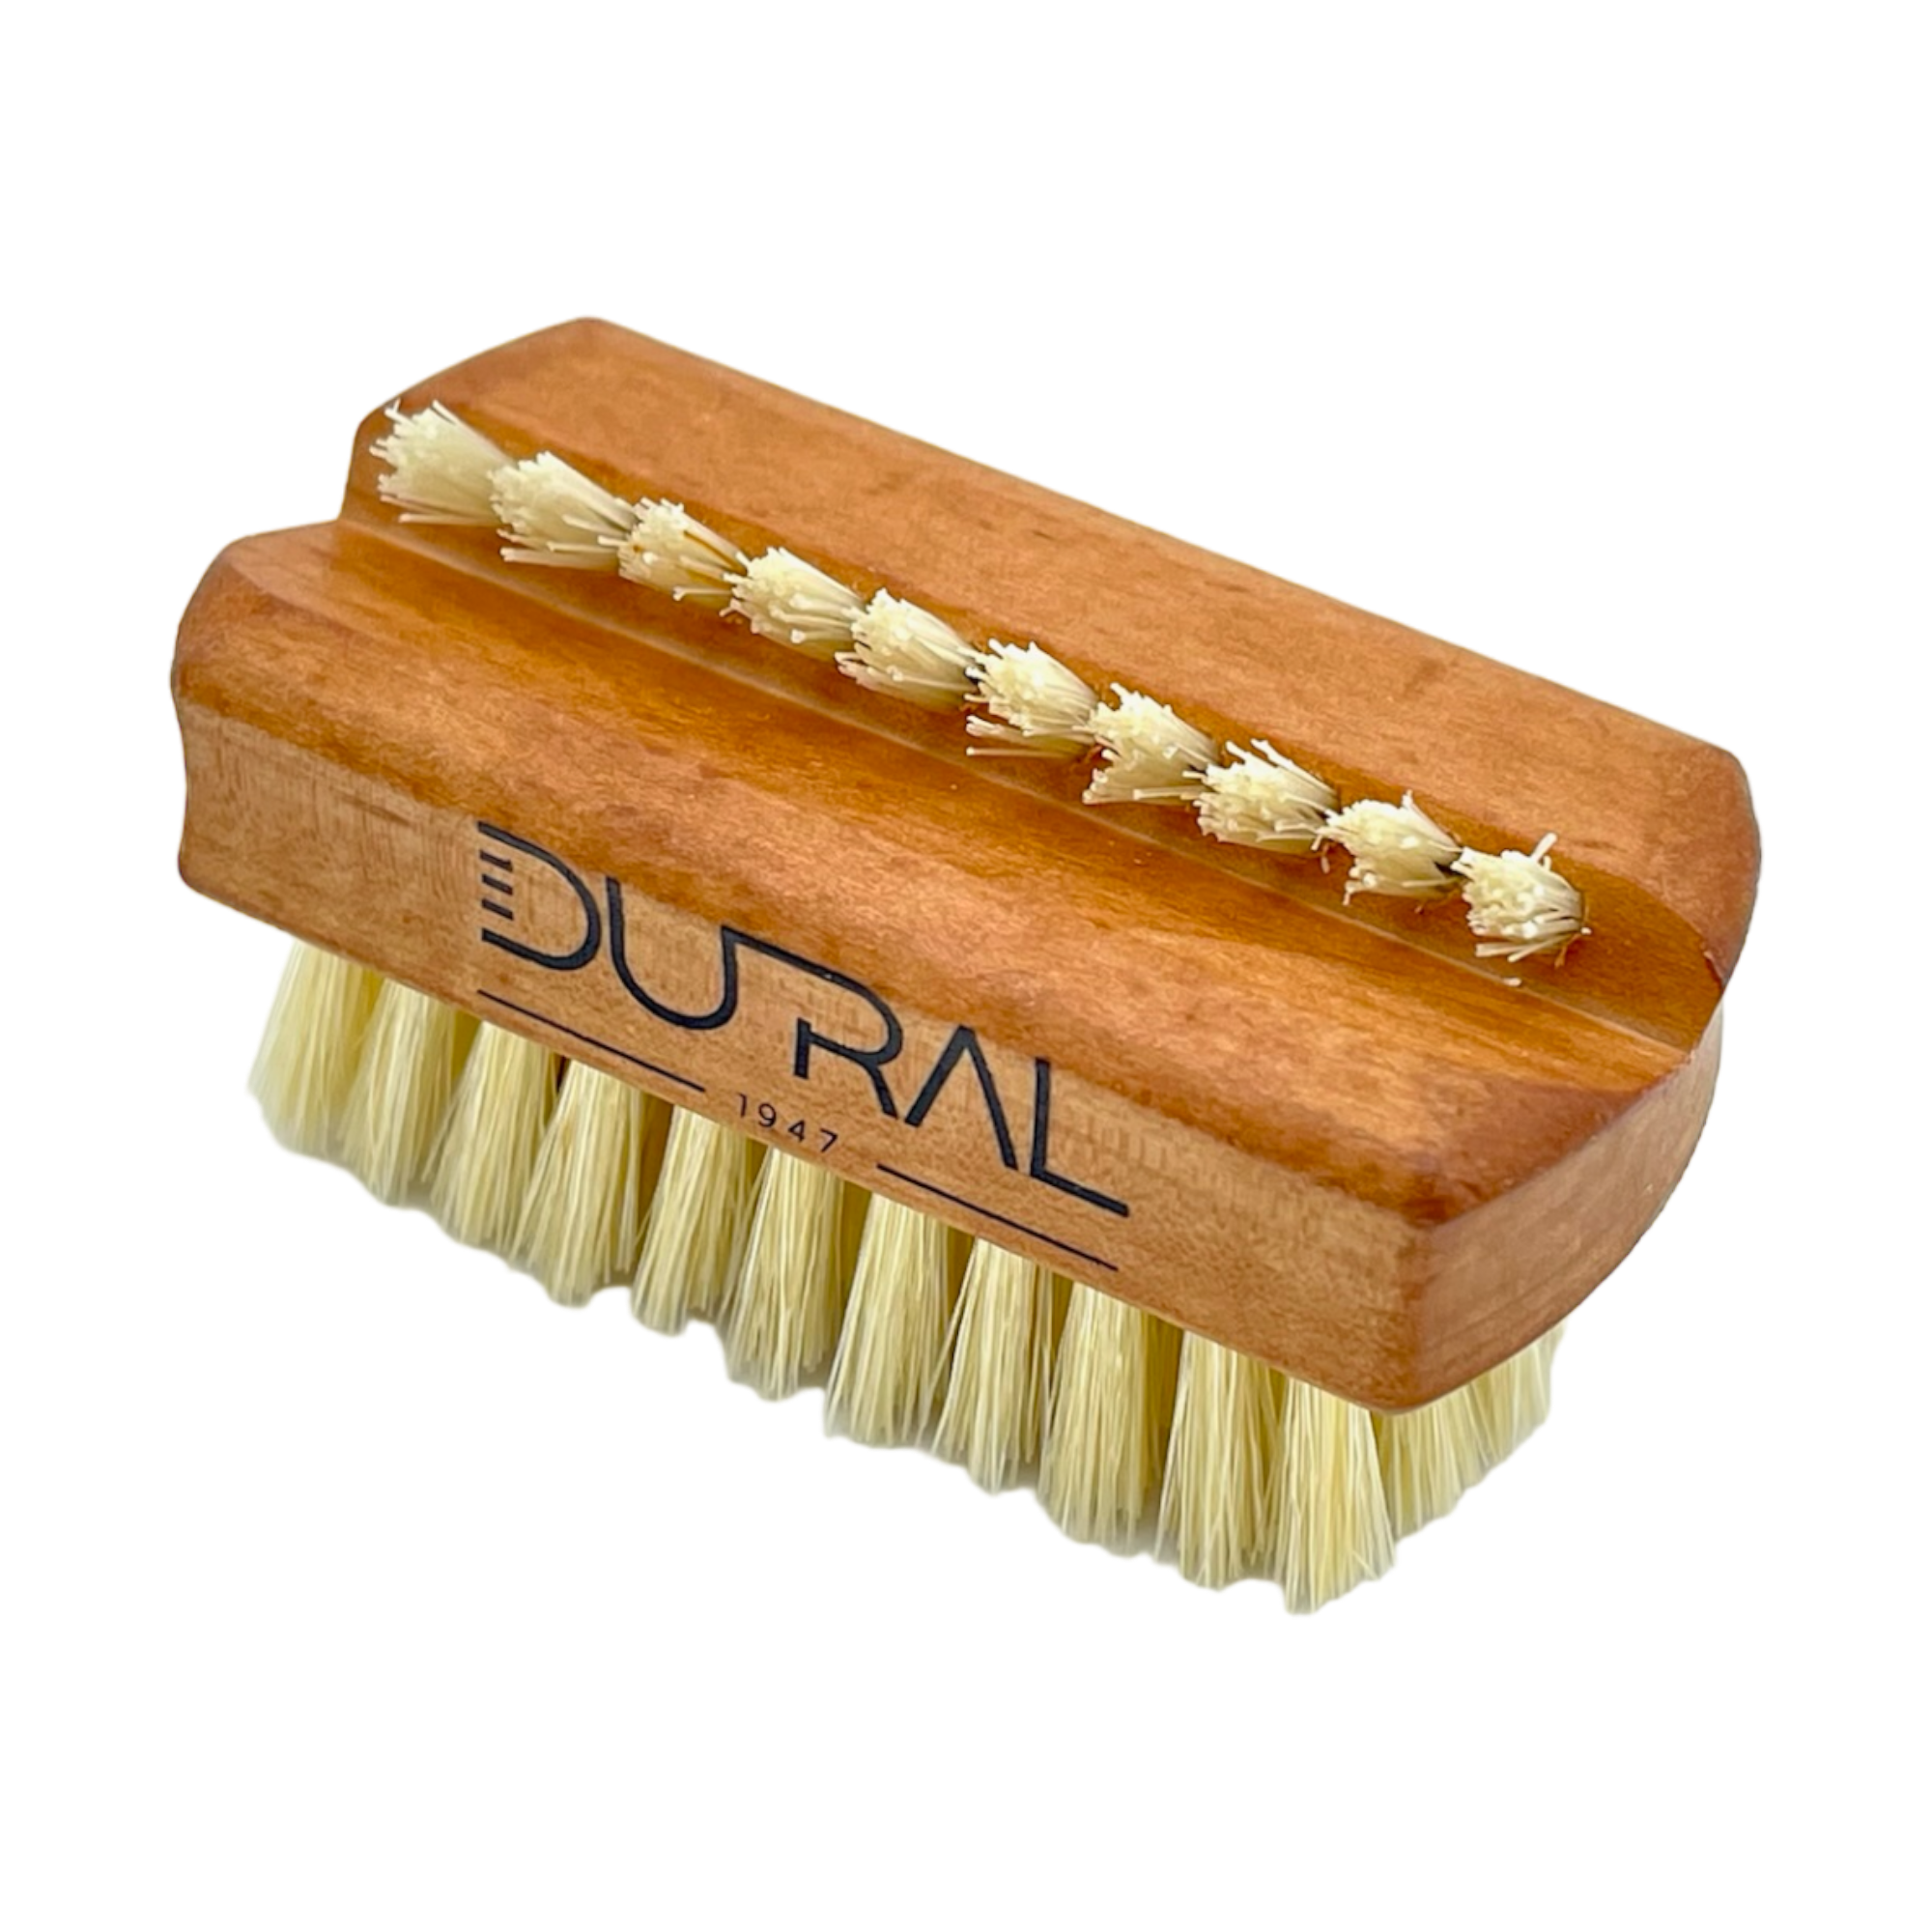 Dural Pear wood hand/nail brush with natural bristles - 1 & 5 rows